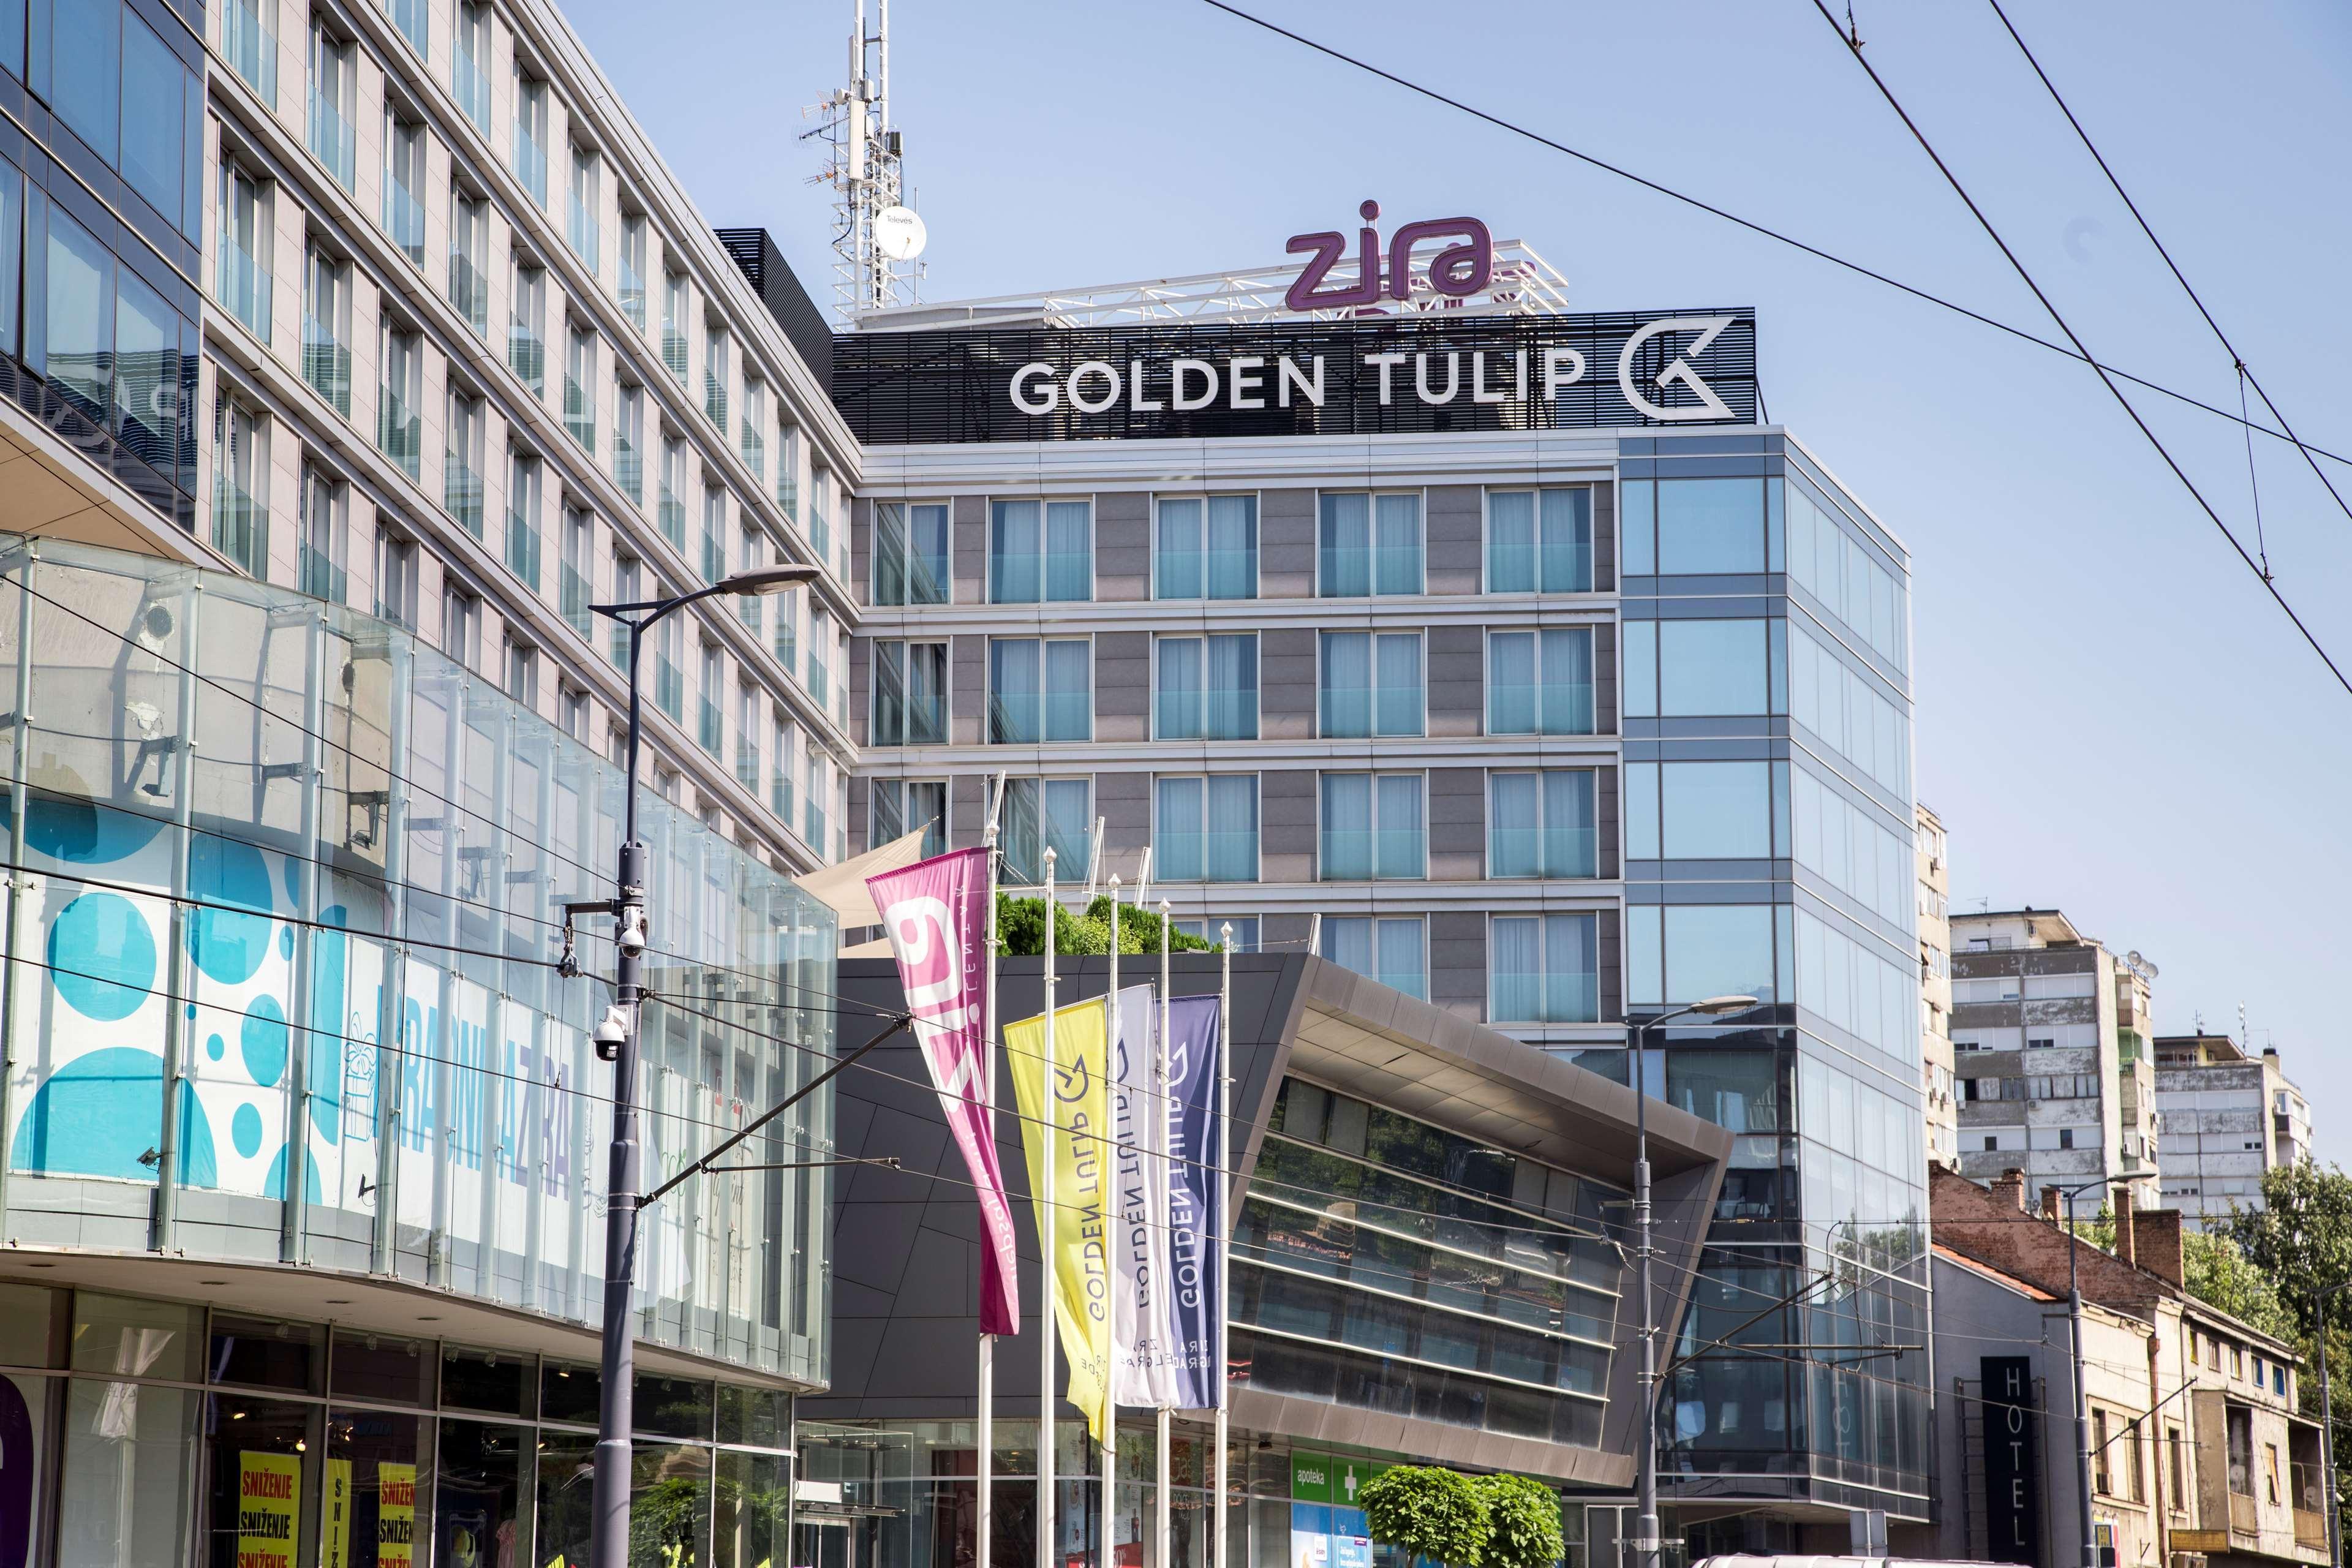 Golden Tulip Zira Belgrade Hotel Kültér fotó